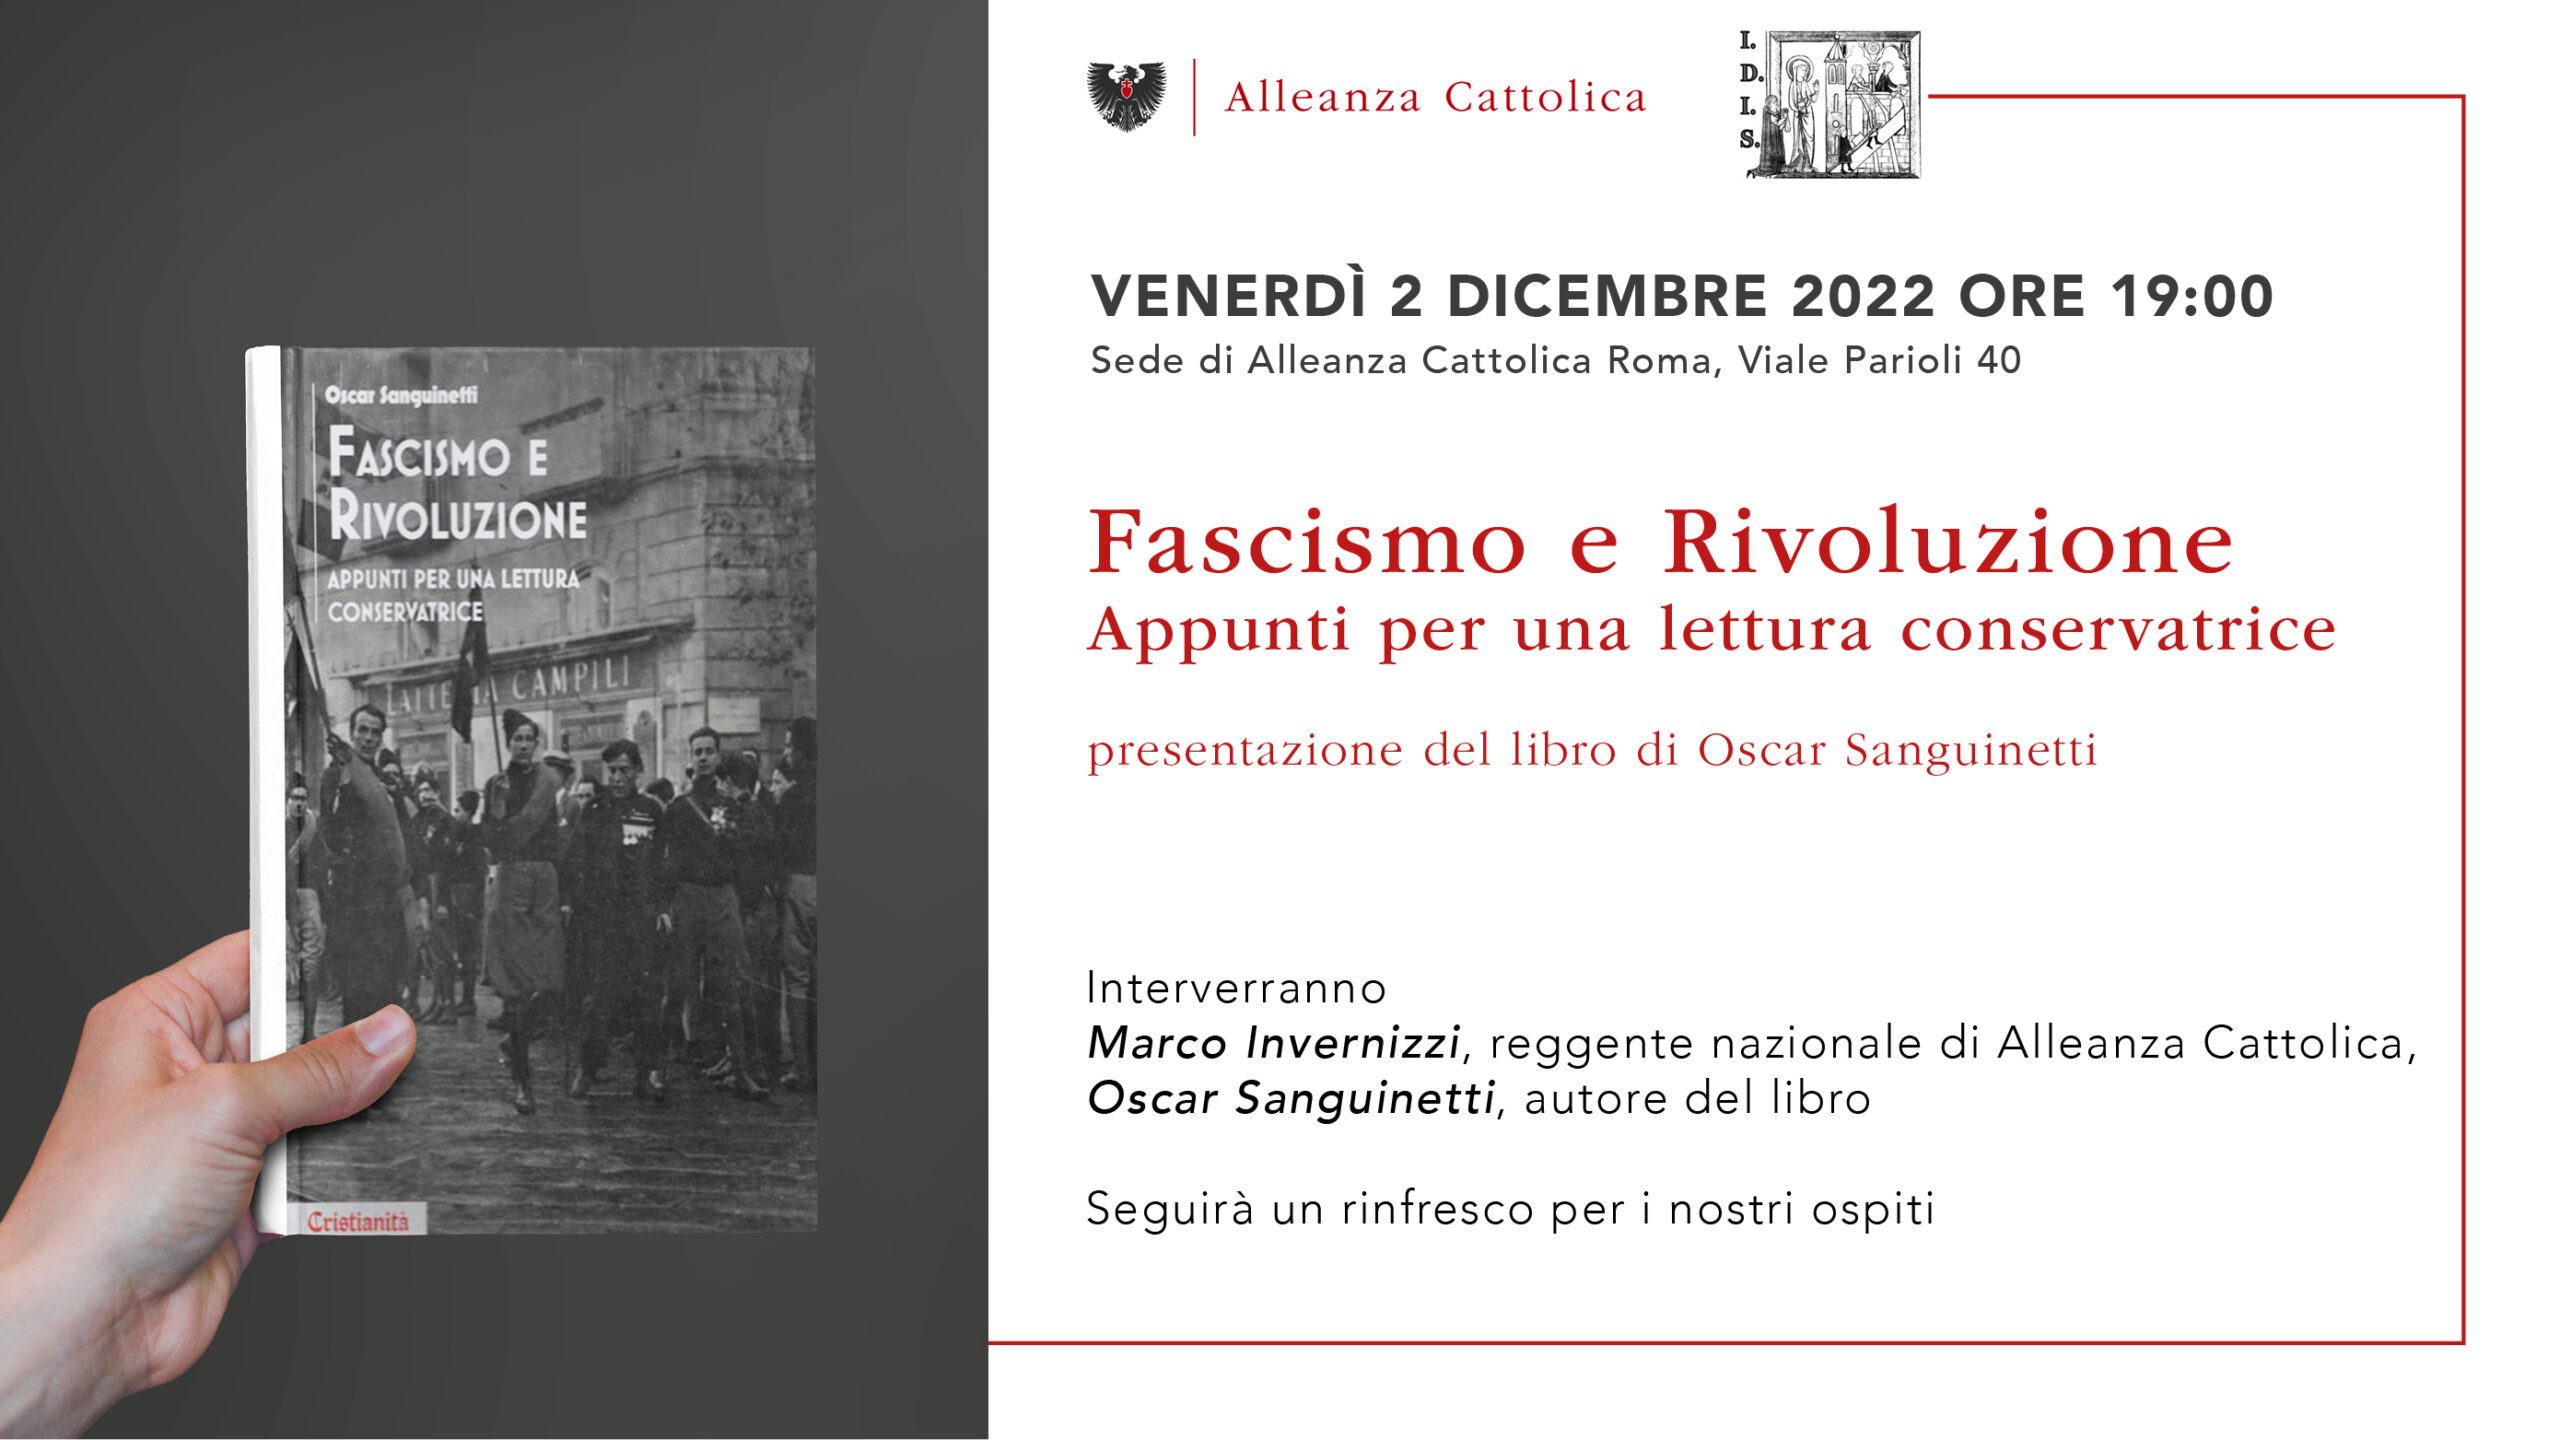 Fascismo e Rivoluzione Appunti per una lettura conservatrice presentazione del libro di Oscar Sanguinetti